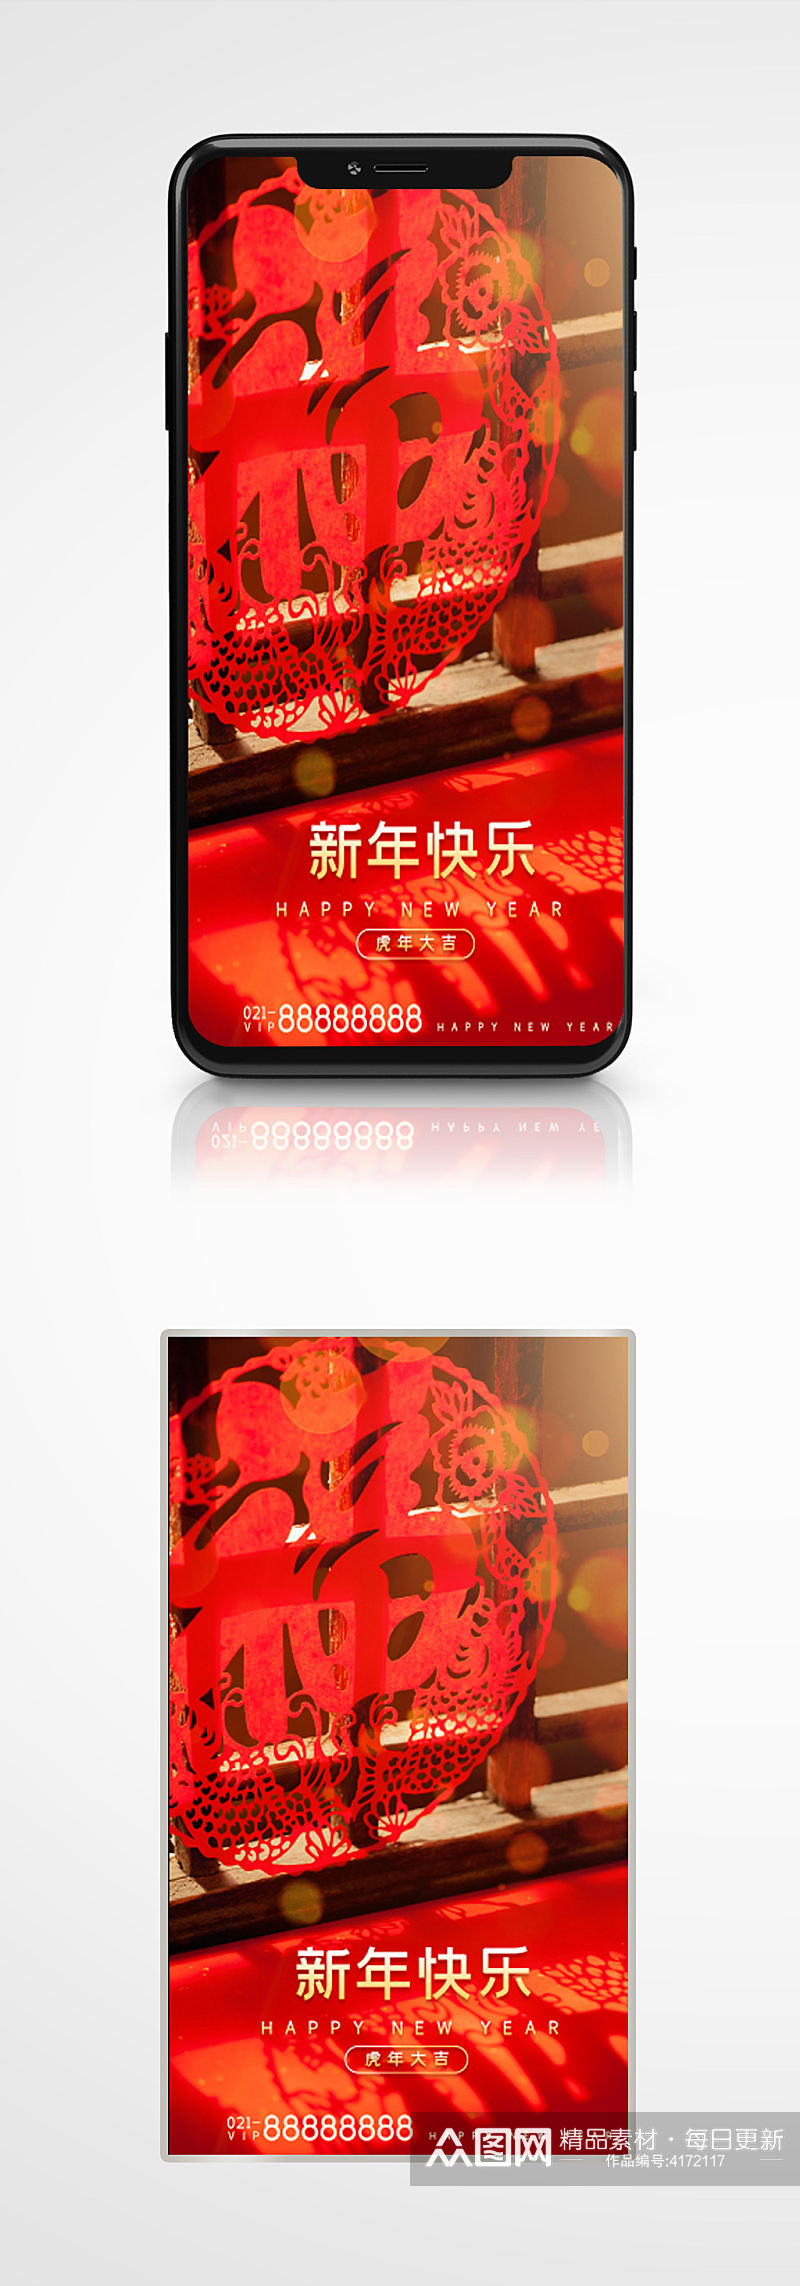 虎年祝福gif手机海报窗花红色新年节日素材